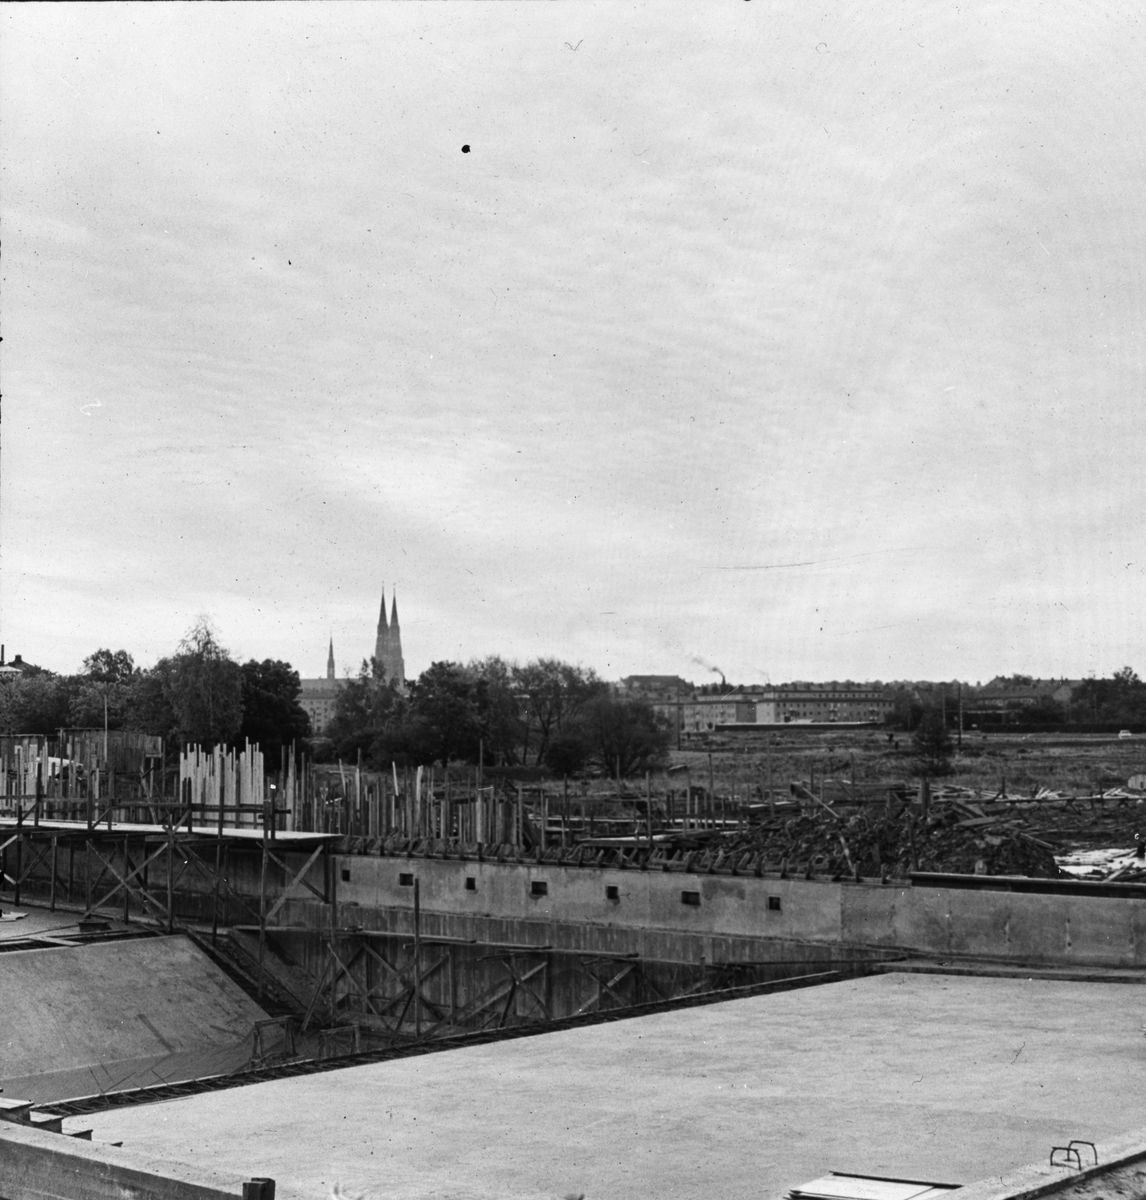 Det nya Fyrisbadet under uppförande, kvarteret Starkodder, Svartbäcken, Uppsala omkring 1958